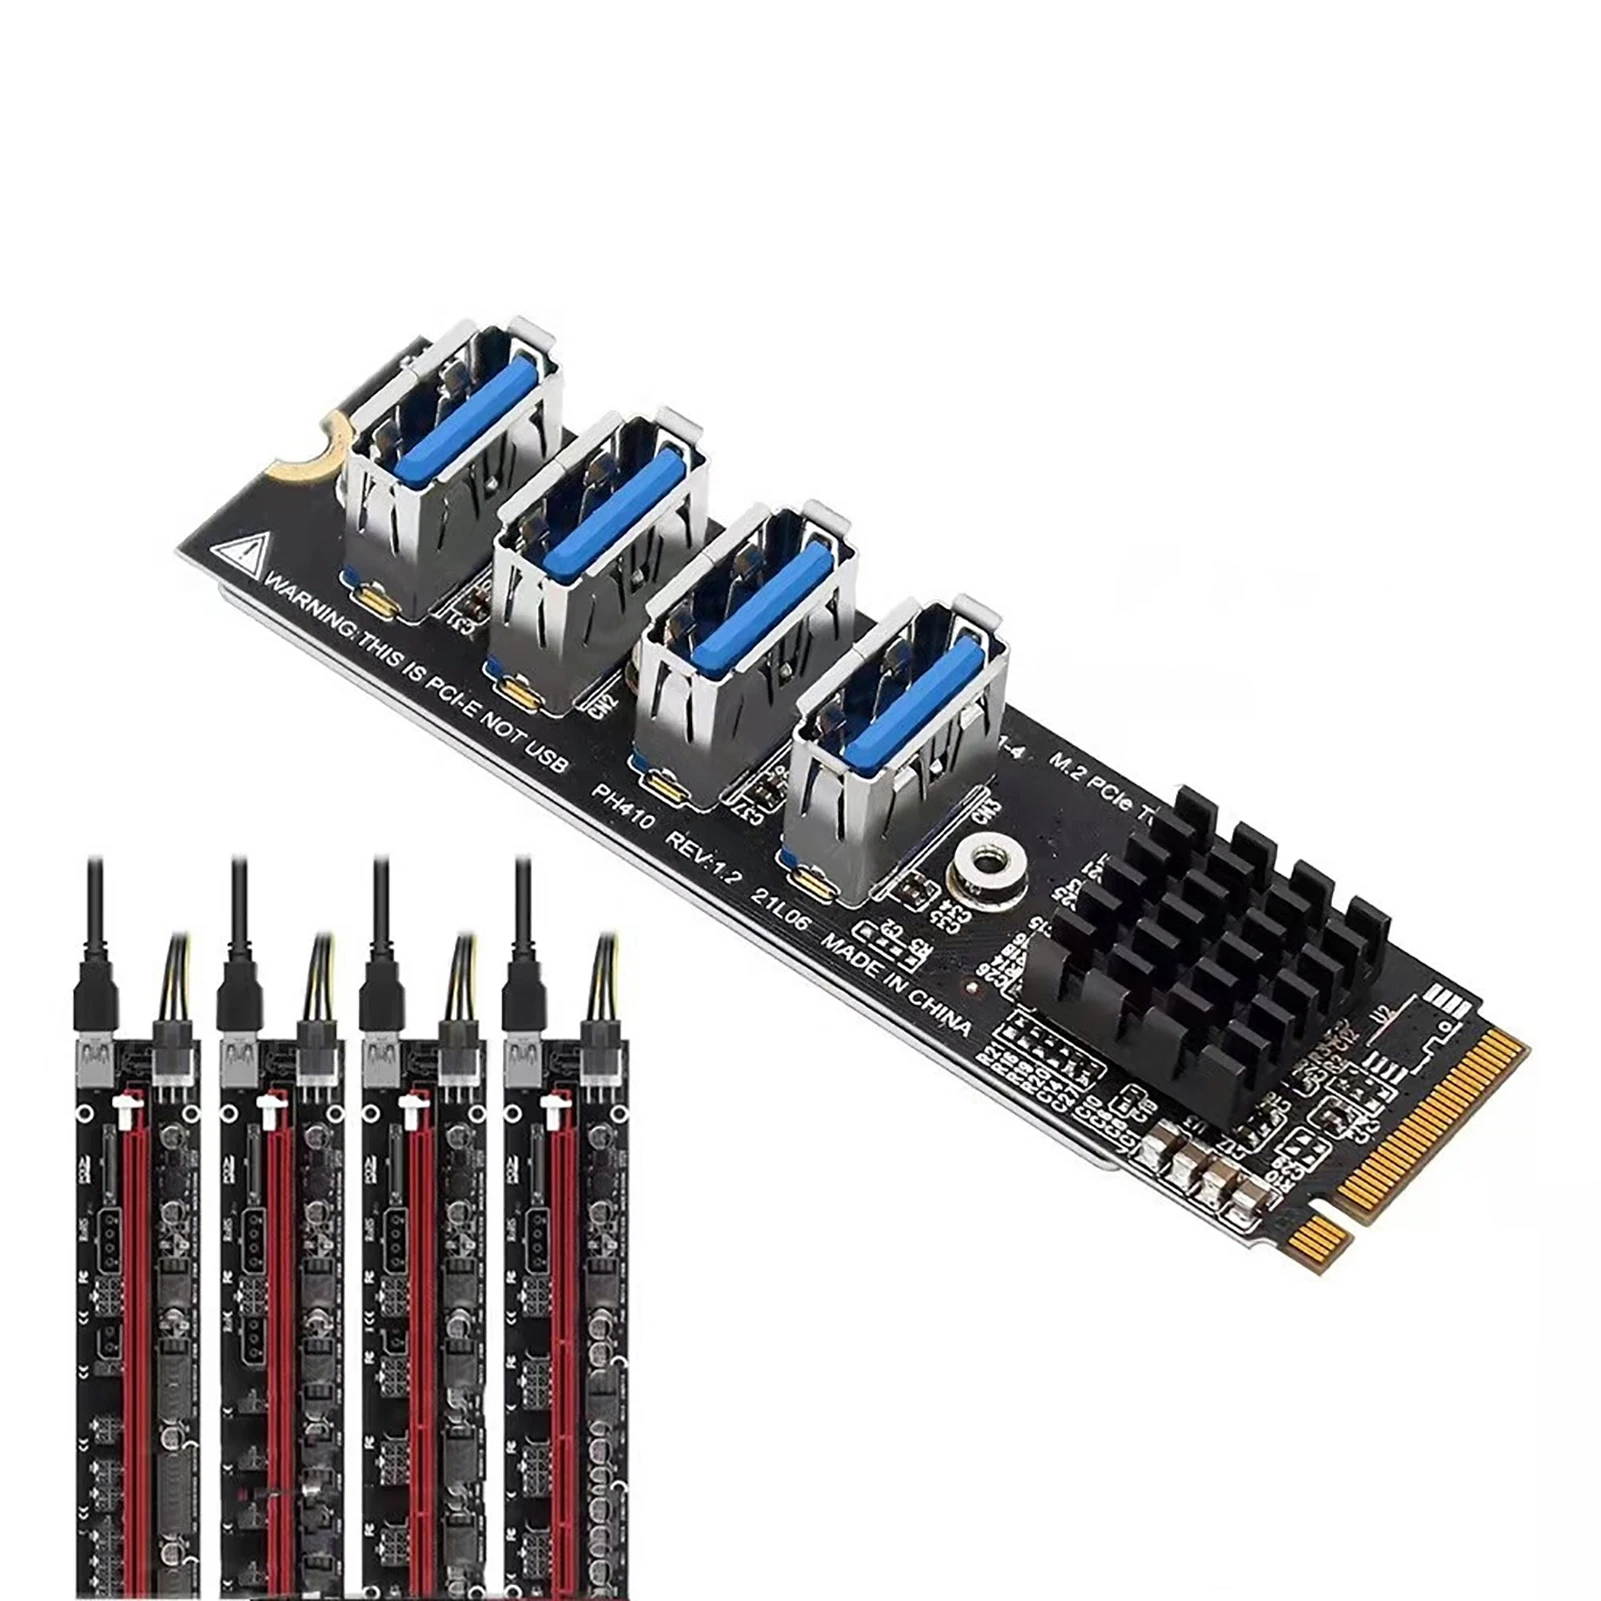 

PCI-E 1 до 4 Райзер-карта 4 Райзера в 1 PCI-карту 4 Райзера в 1 PCI-карту PCIe множители райзеры 1X на внешний 4 PCI-e адаптер